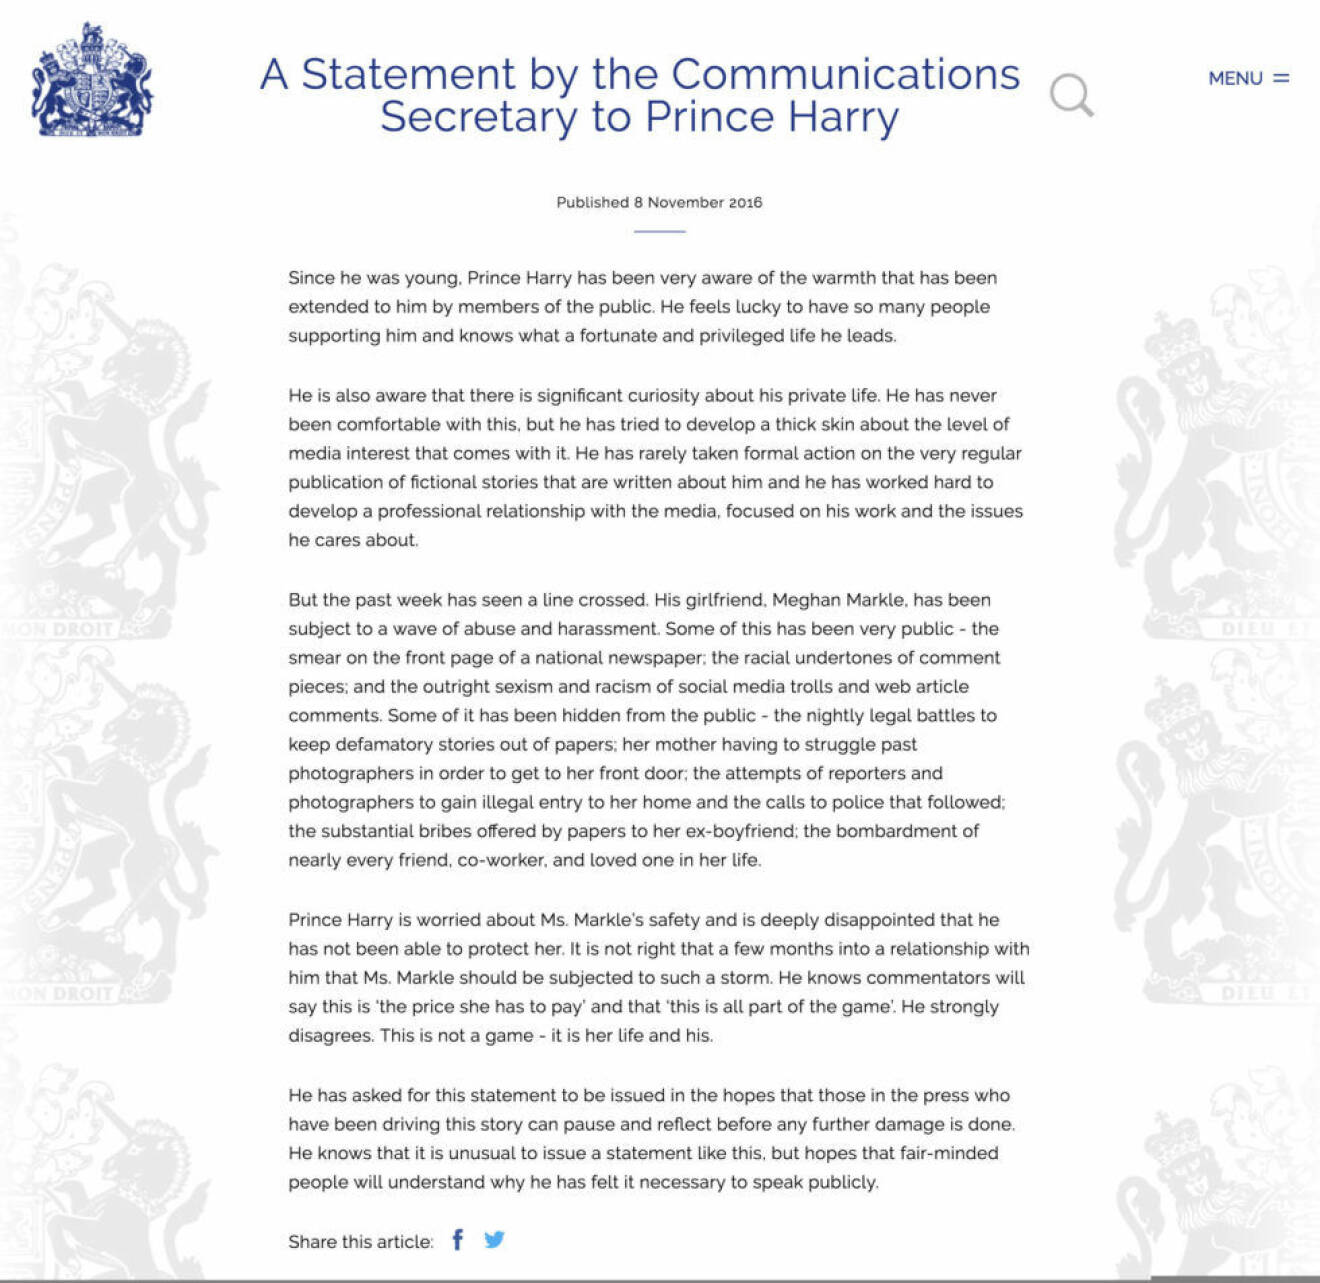 Prins Harrys skriftliga uttalande där han offentliggör sin relation med Meghan Markle samt uttrycker sin djupa besvikelse över att han inte kan skydda flickvännen från alla trakasserier i sociala medier.